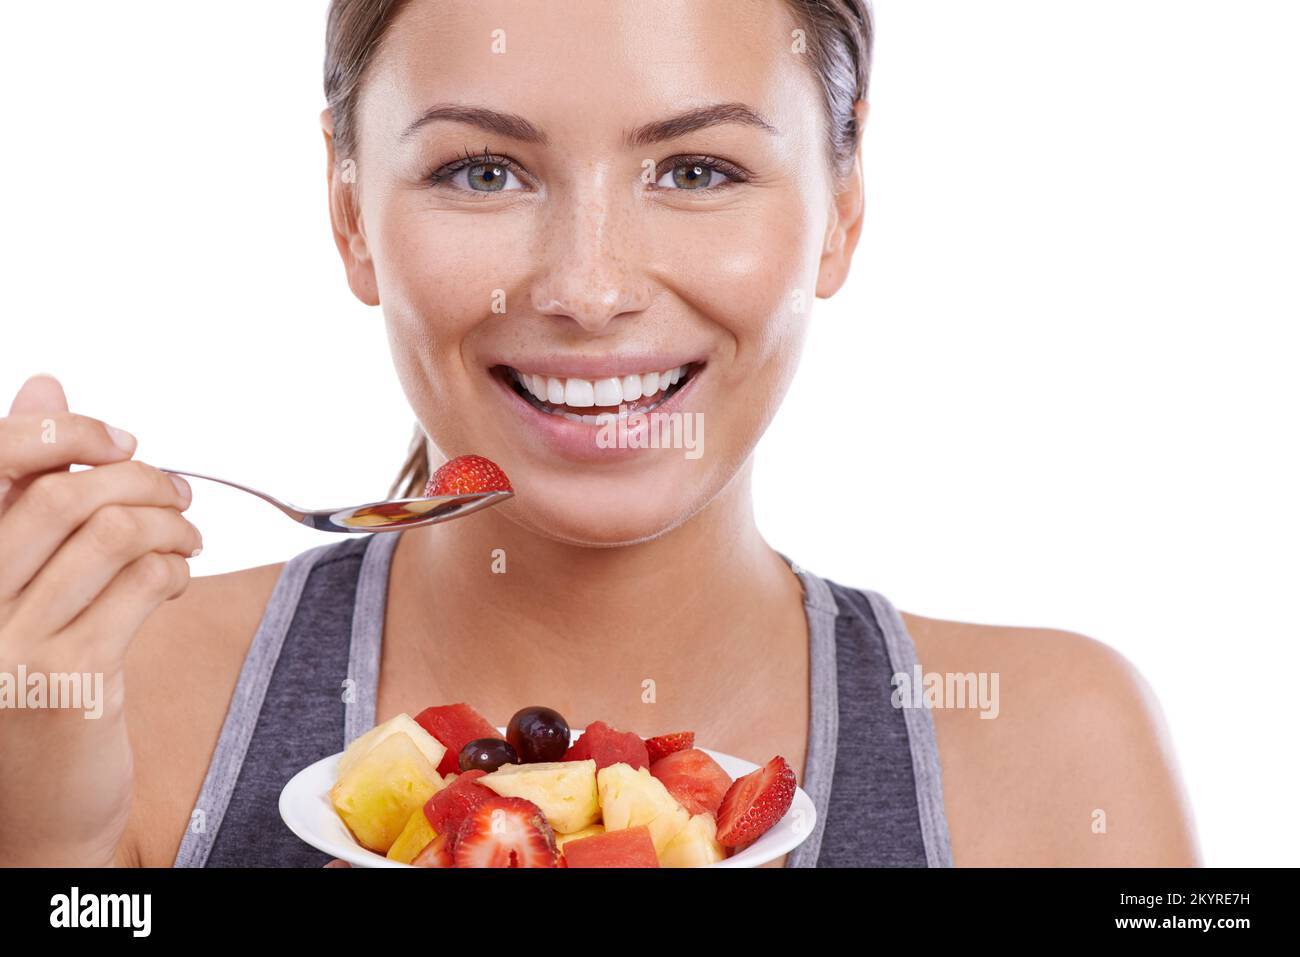 Ama vivere in modo sano. Ritratto di una giovane donna attraente che mangia una ciotola di Macedonia di frutta. Foto Stock